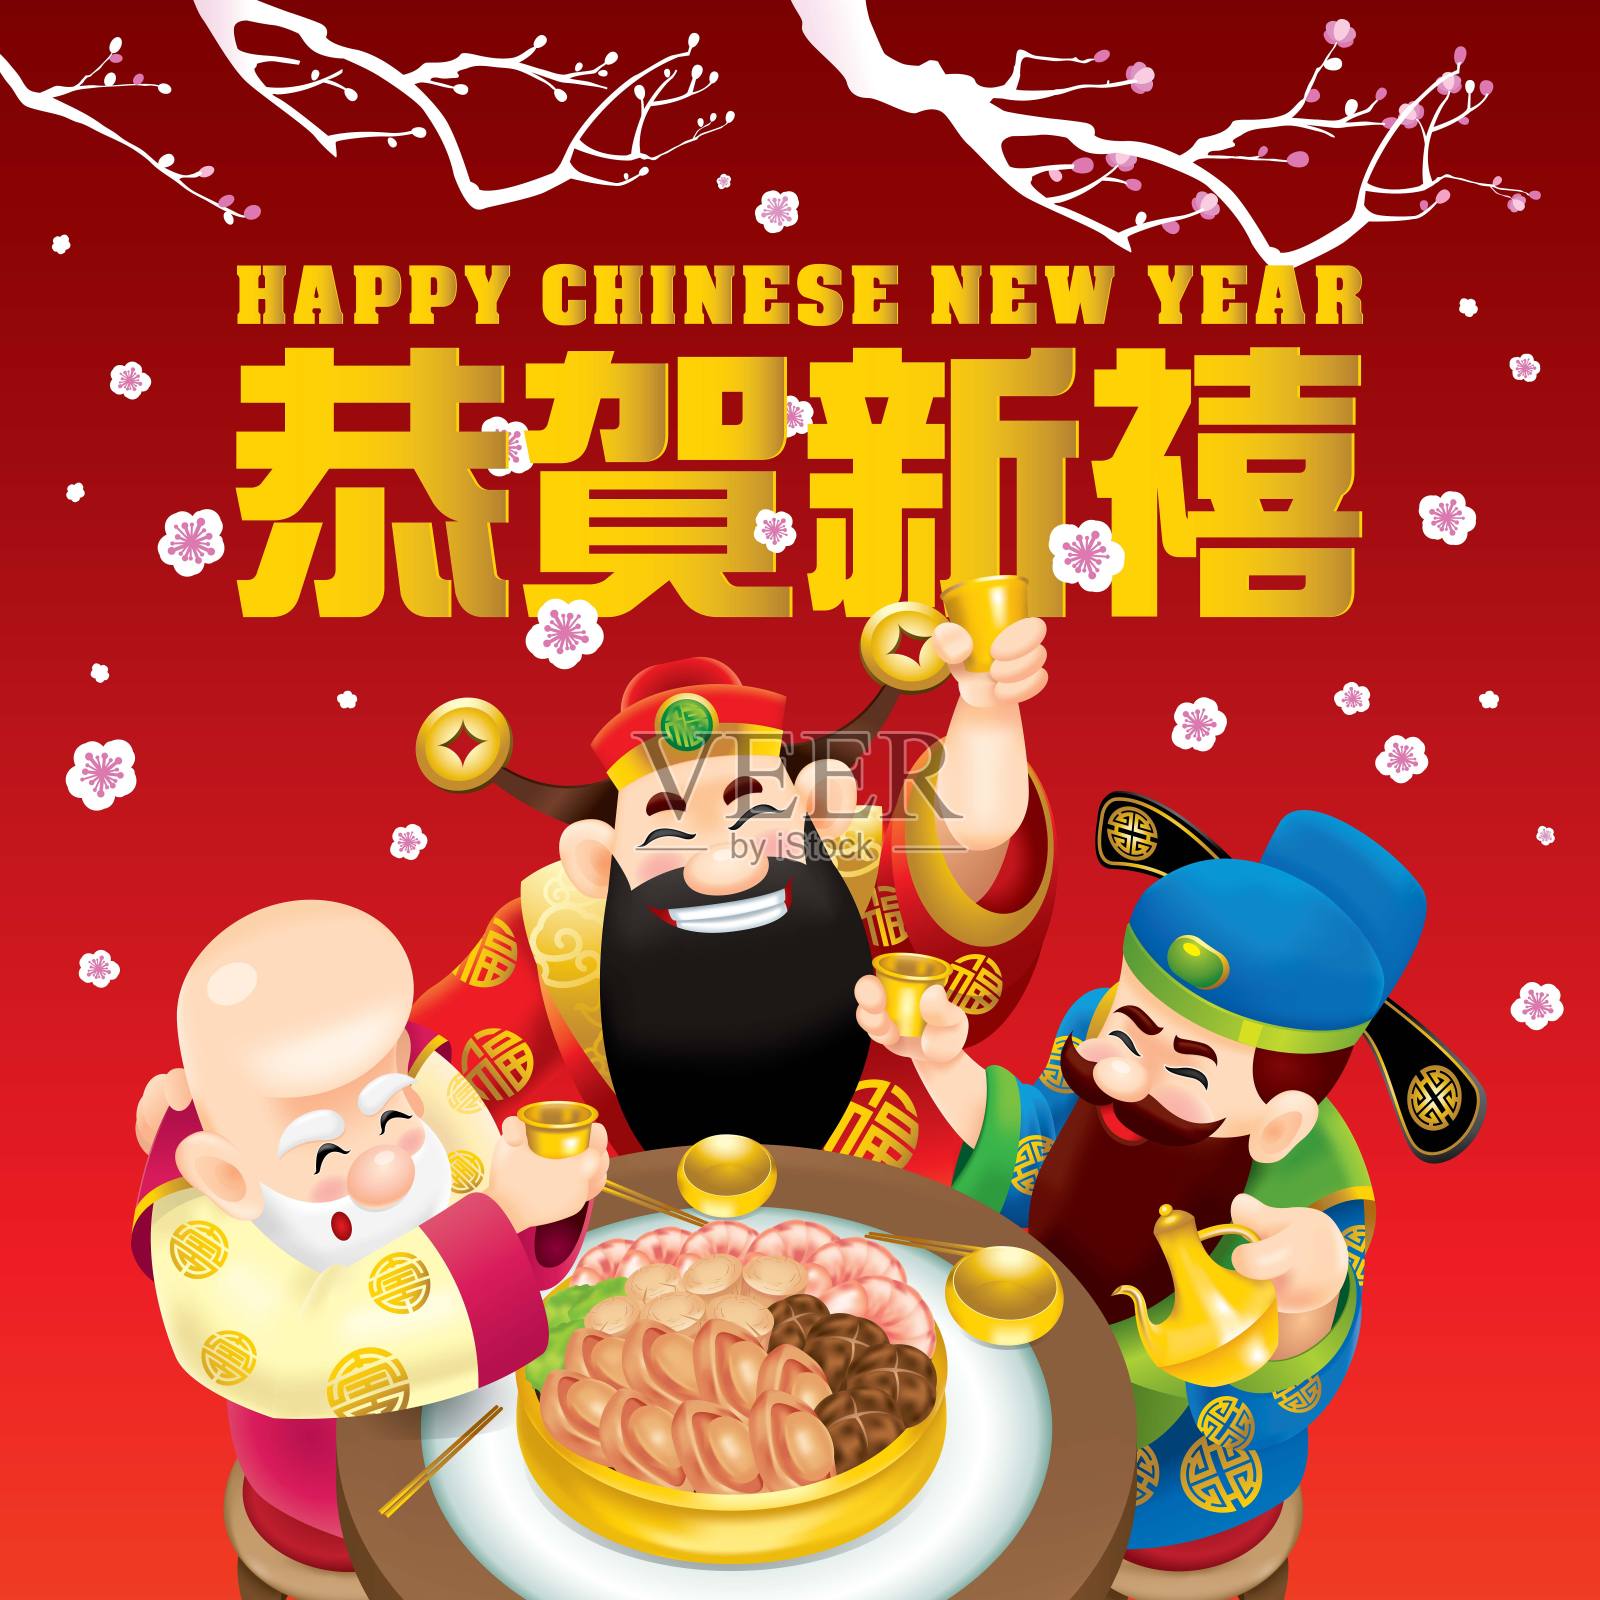 三位可爱的中国神(代表长寿、富有和事业)正在愉快地吃喝。描述:祝大家春节快乐。插画图片素材